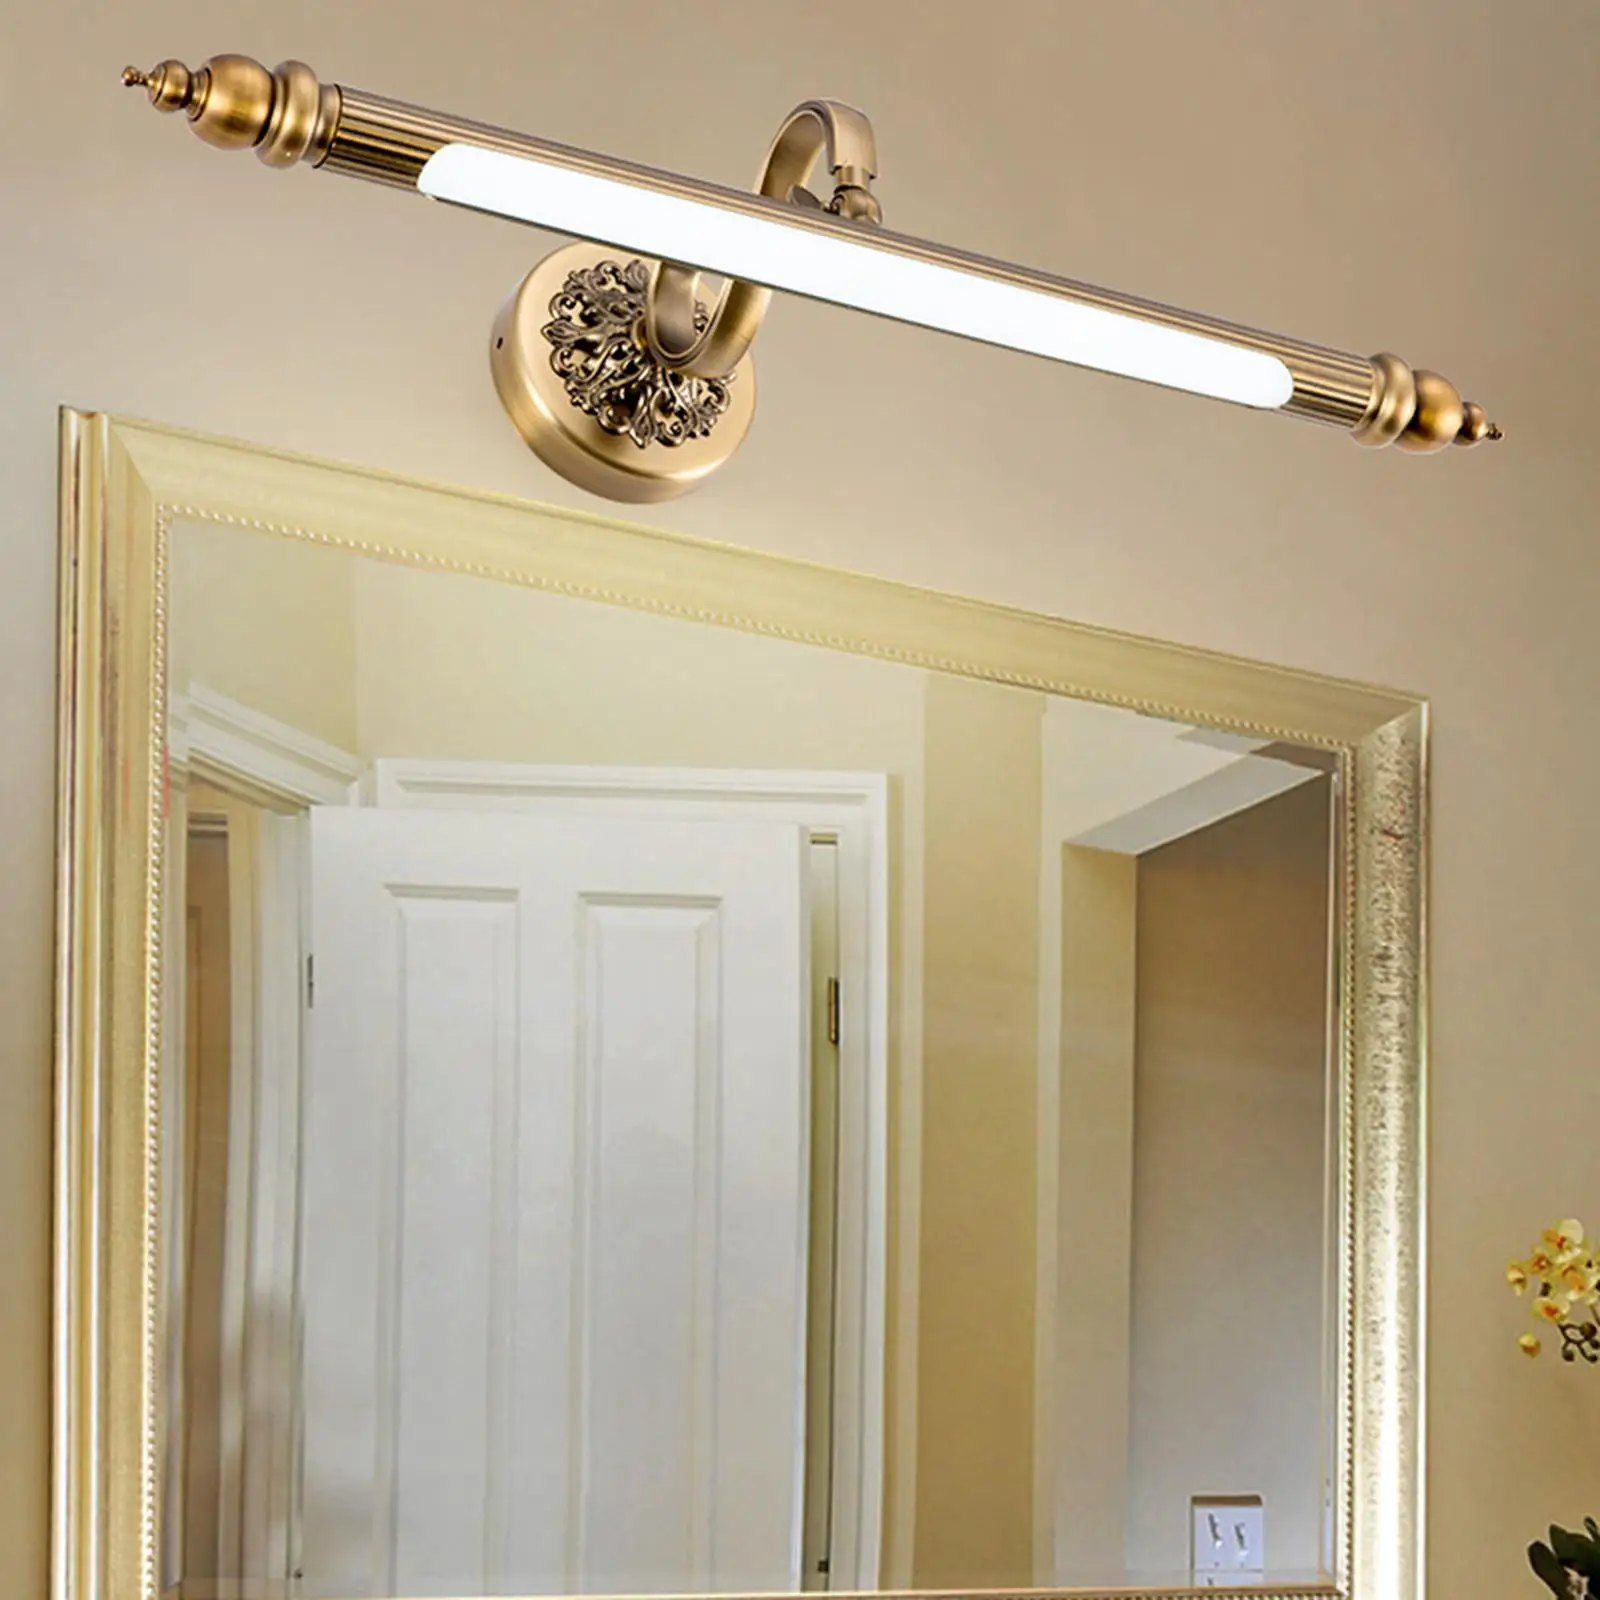 Retro Wired LED Mirror Light Adjustable Rustproof Metal Mirror Lighting Fixture Makeup Lighting Light for Bedroom Bathroom Home